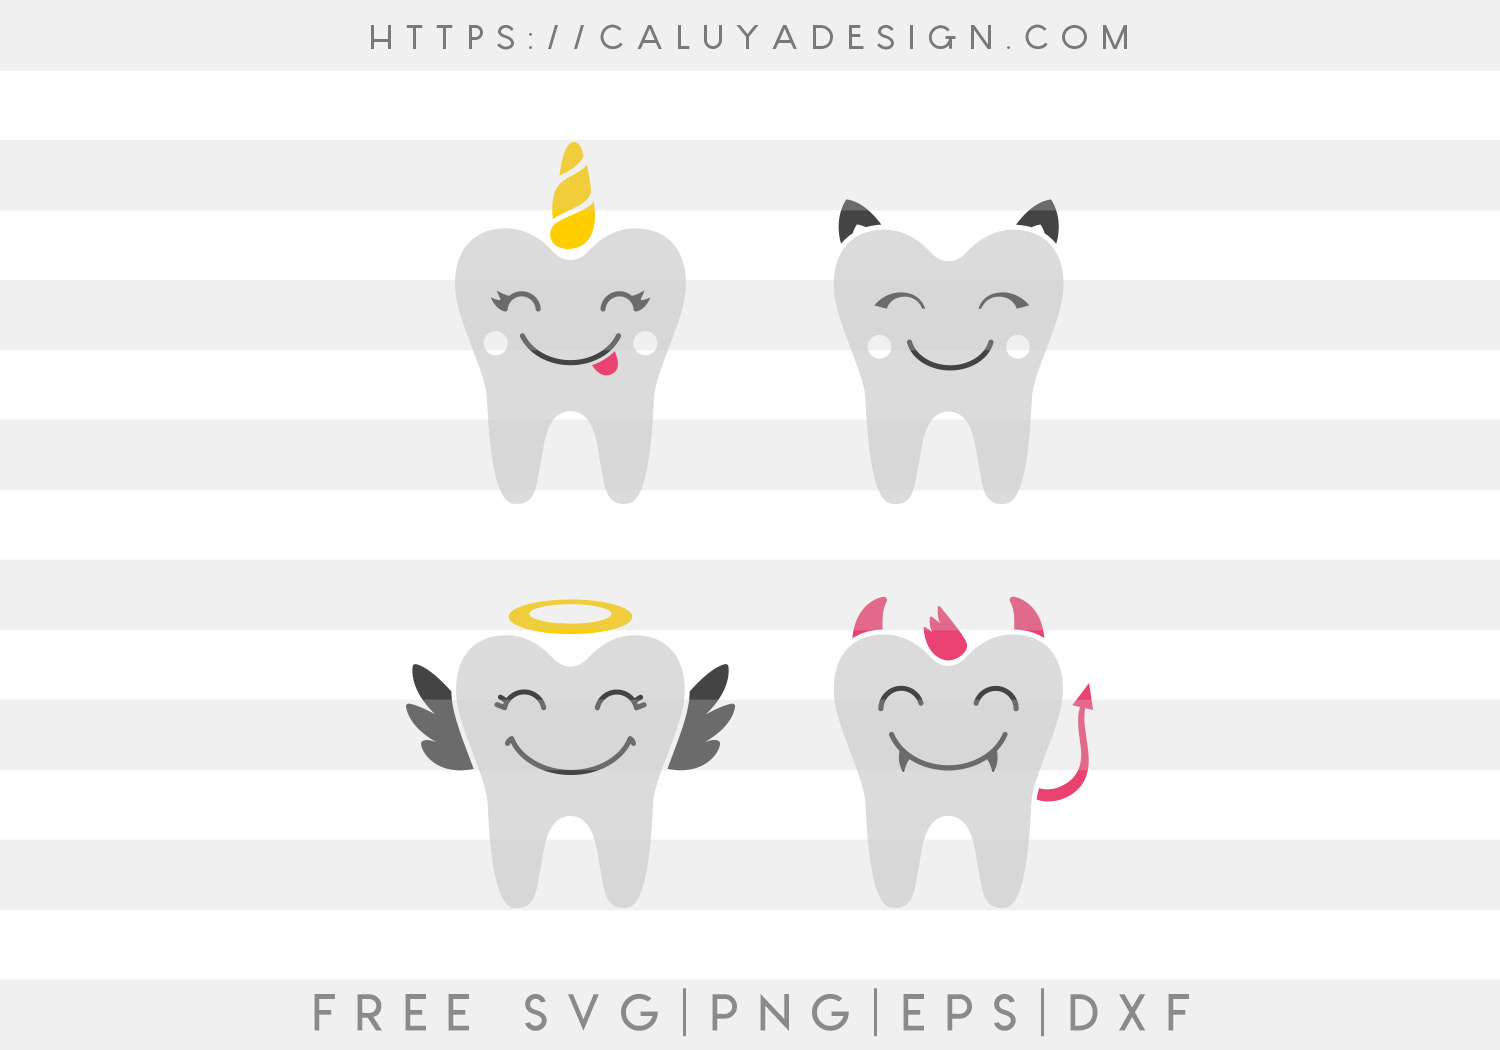 Fun Teeth SVG, PNG, EPS & DXF